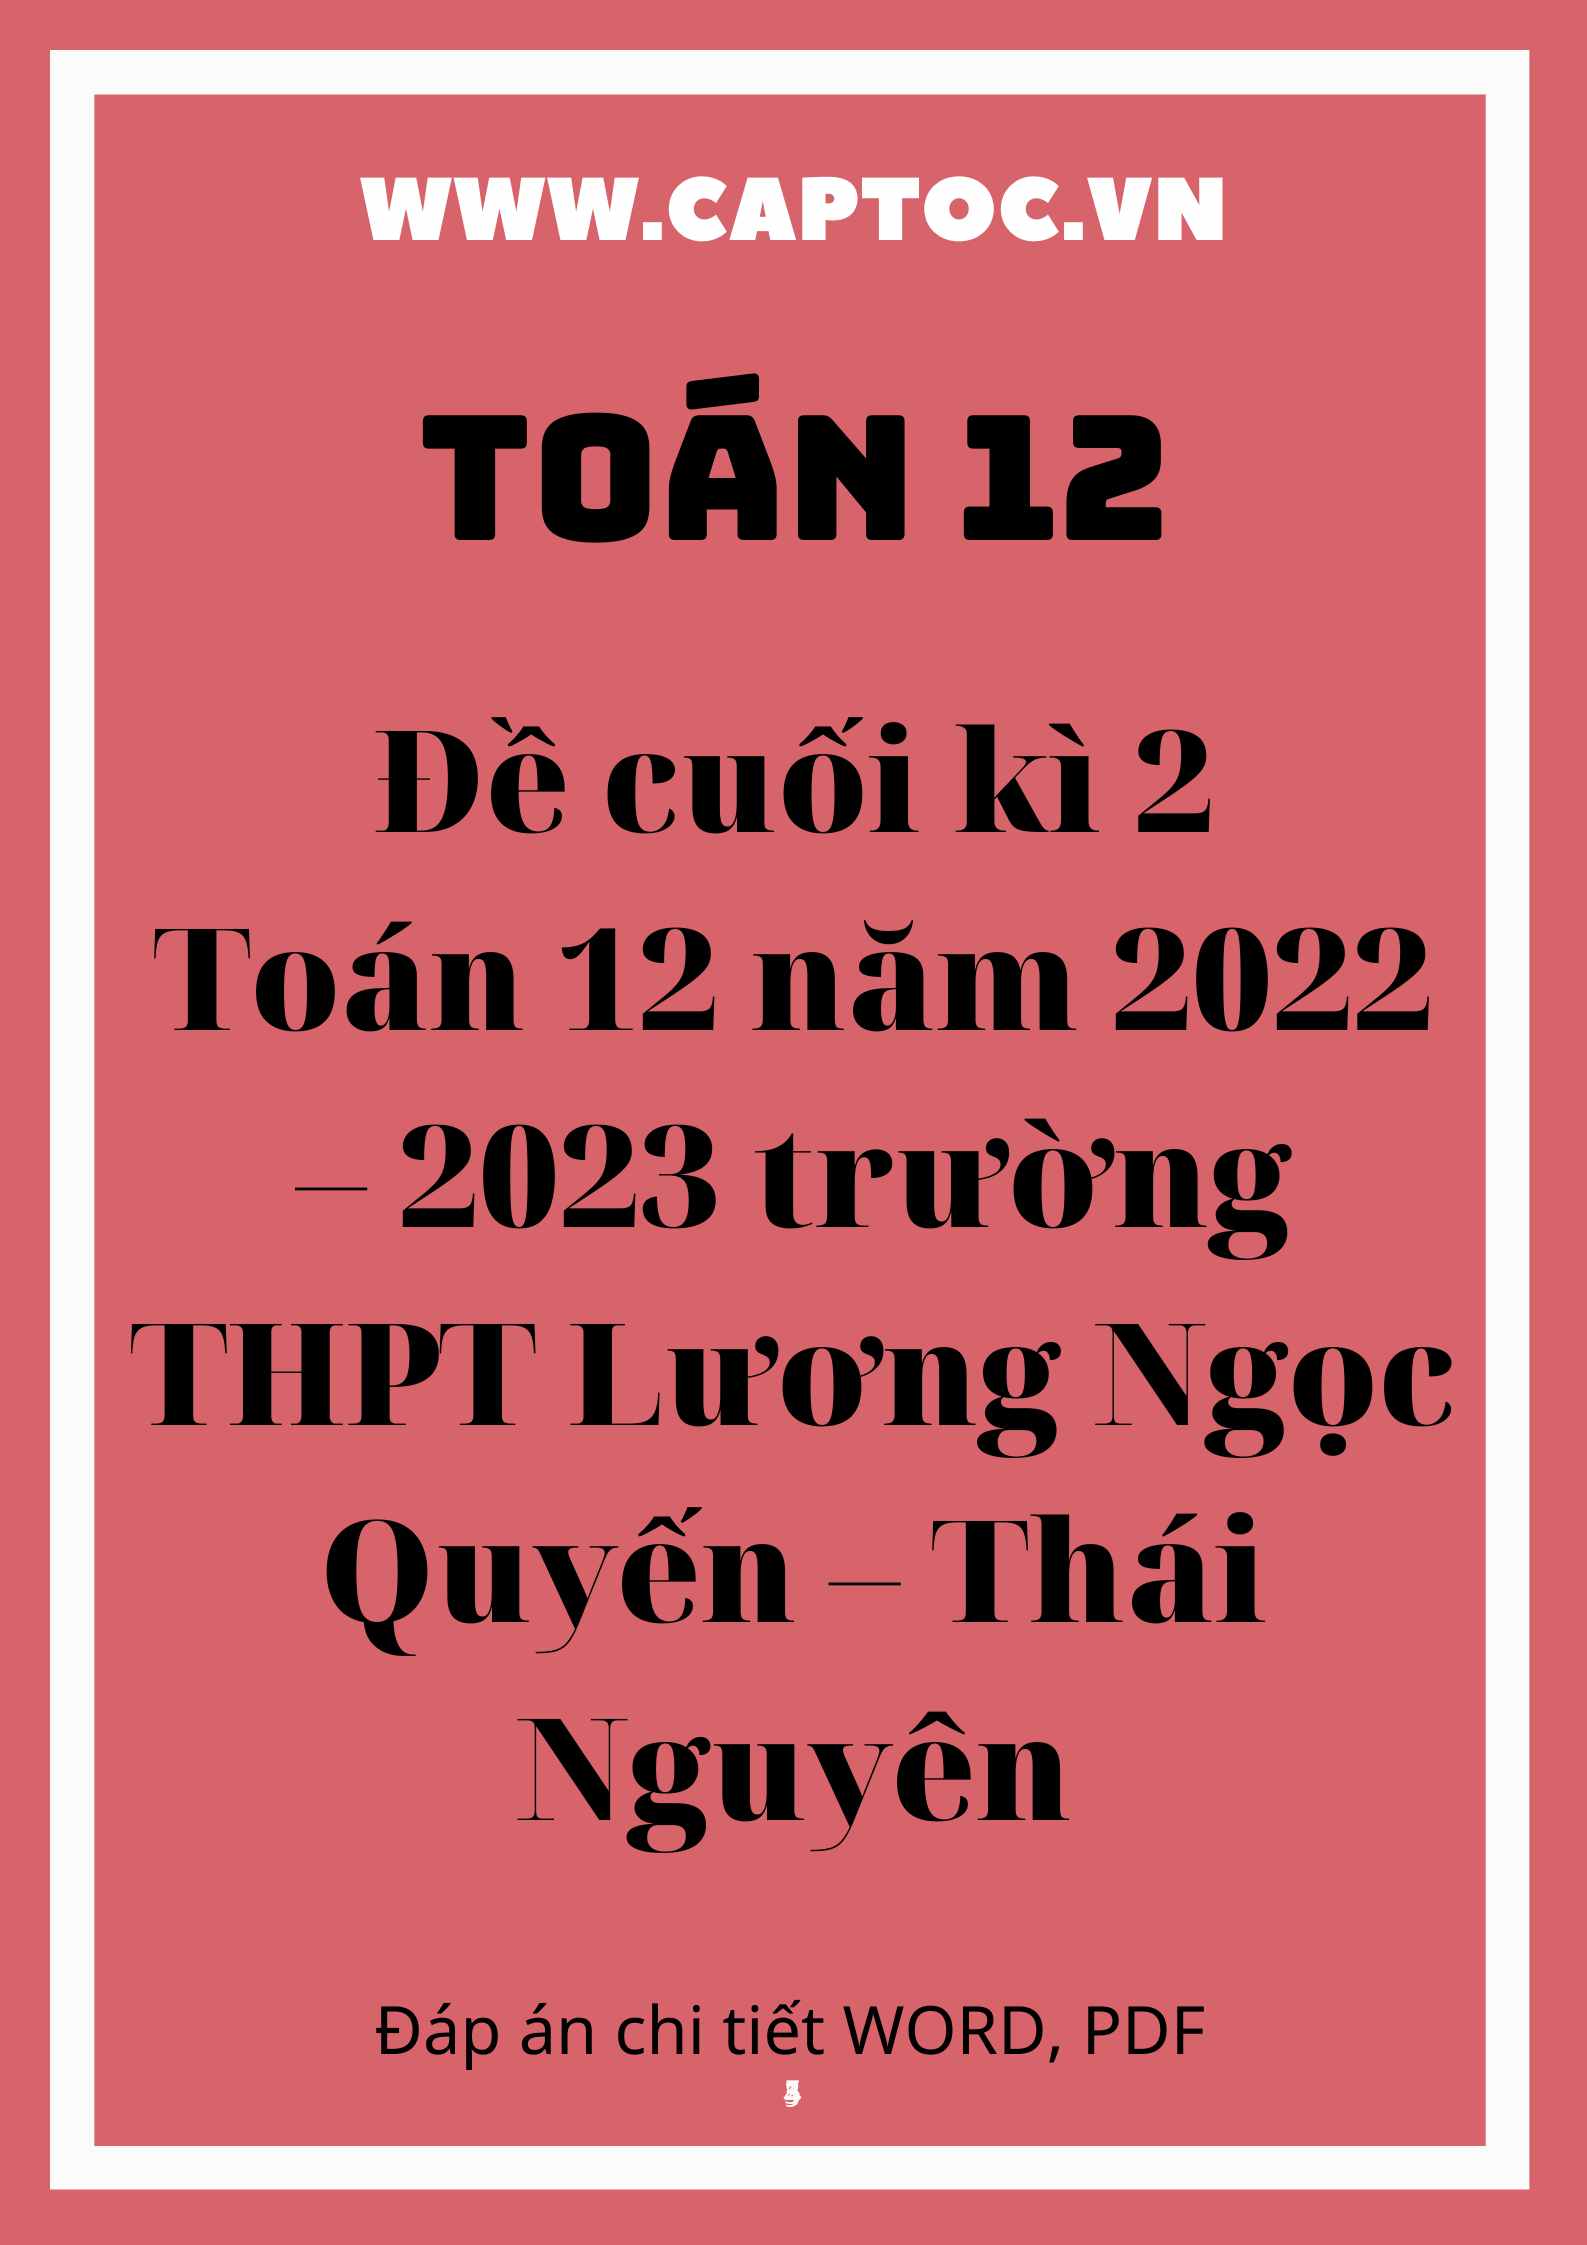 Đề cuối kì 2 Toán 12 năm 2022 – 2023 trường THPT Lương Ngọc Quyến – Thái Nguyên